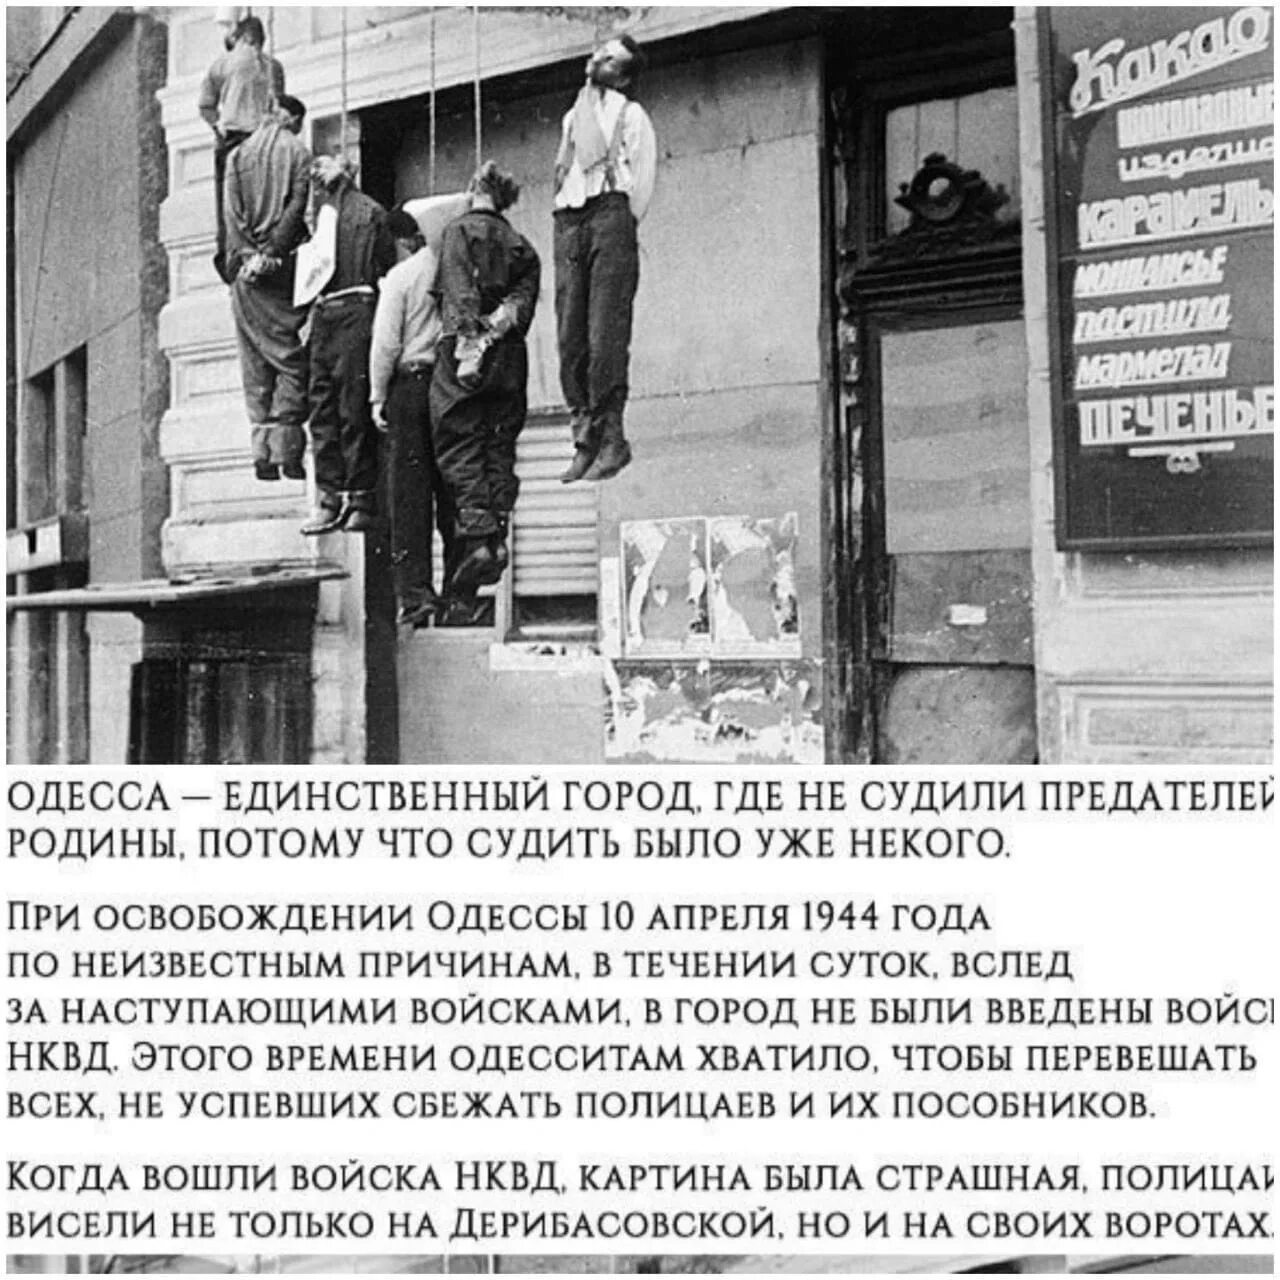 Список предателей родины. Казнь полицаев в Одессе 1944. 10 Апреля 1944 Одесса полицаи. Освобождение Одессы в 1944 году повешенные полицаи. Одесса в 1944 году.